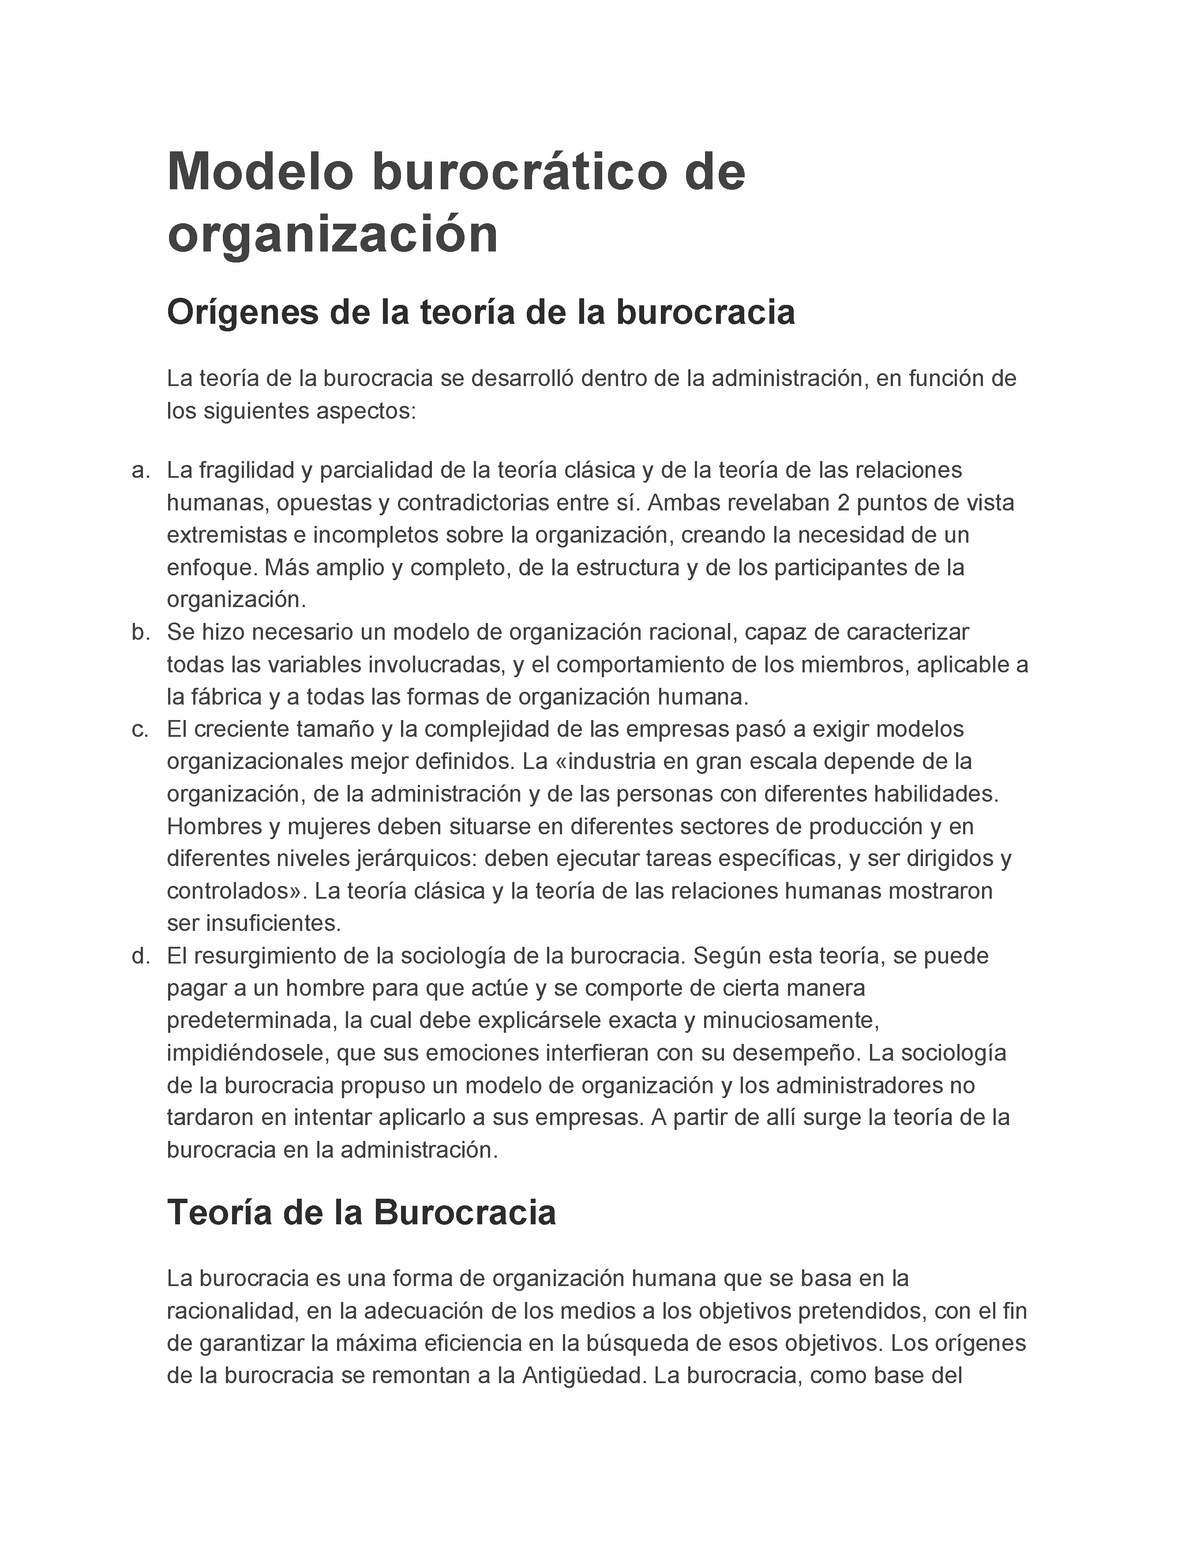 Modelo burocrático de organización - Modelo burocrático de organización  Orígenes de la teoría de la - Studocu